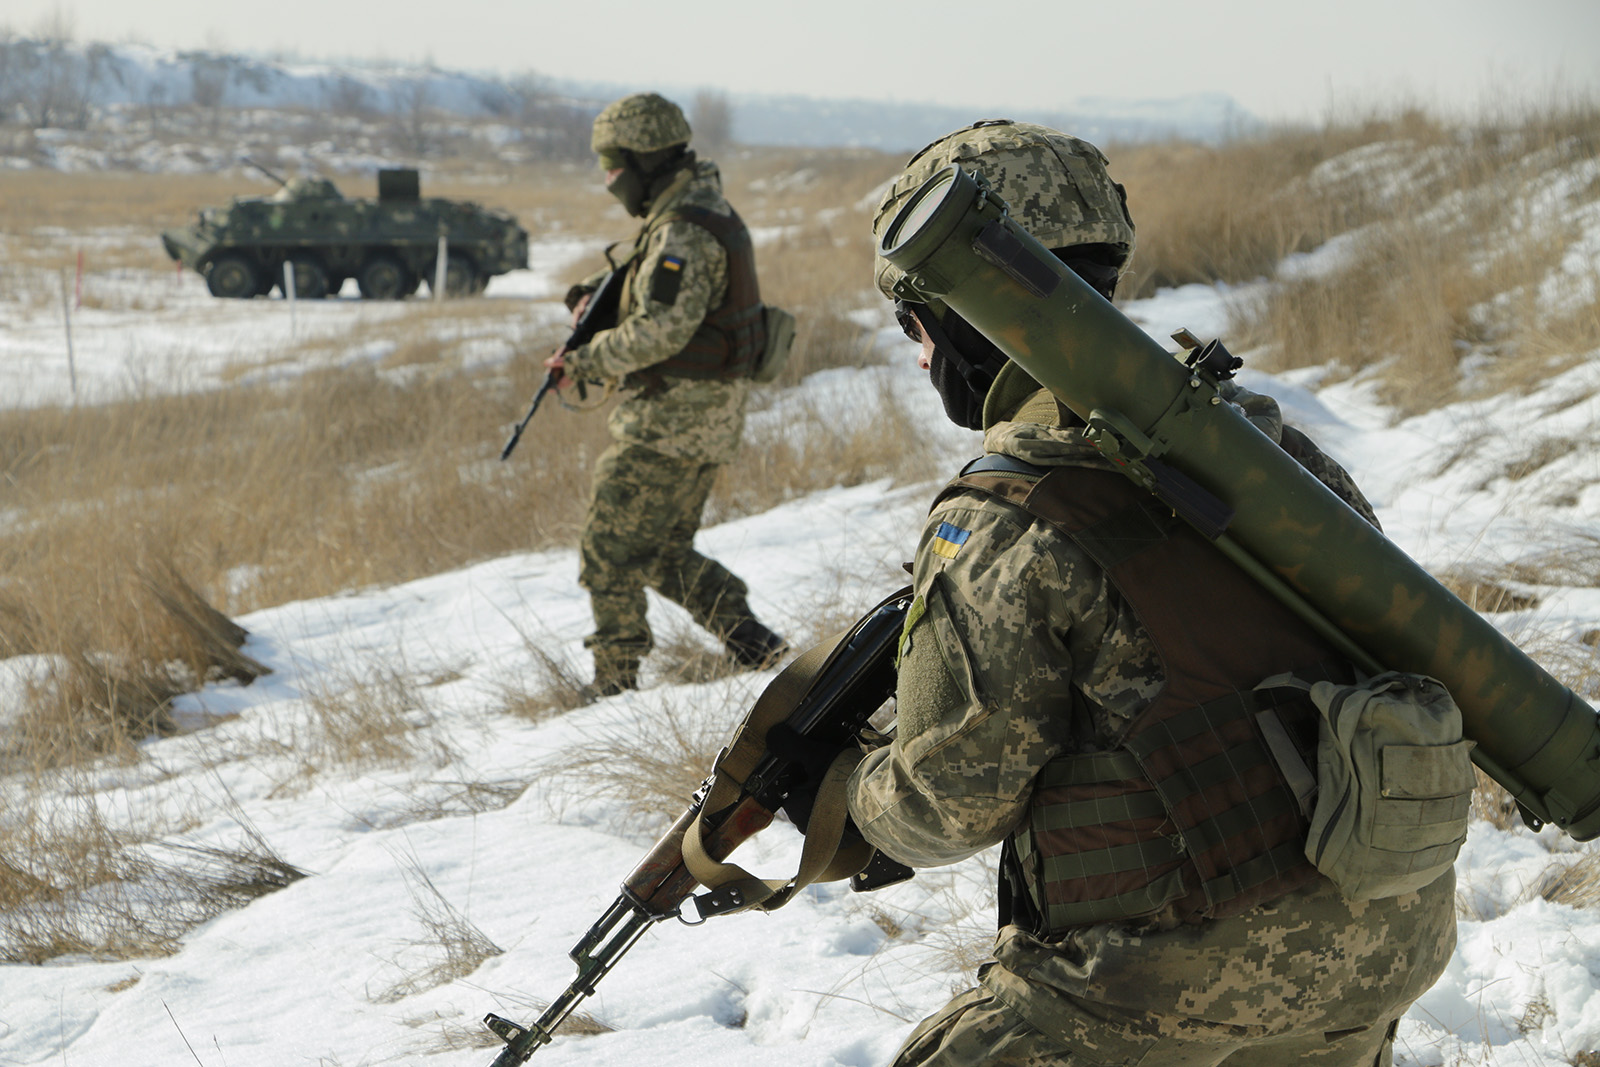 Учения подразделений ВСУ в районе проведения операции объединенных сил в Луганской области. Фото с официальной страницы ООС в Facebook